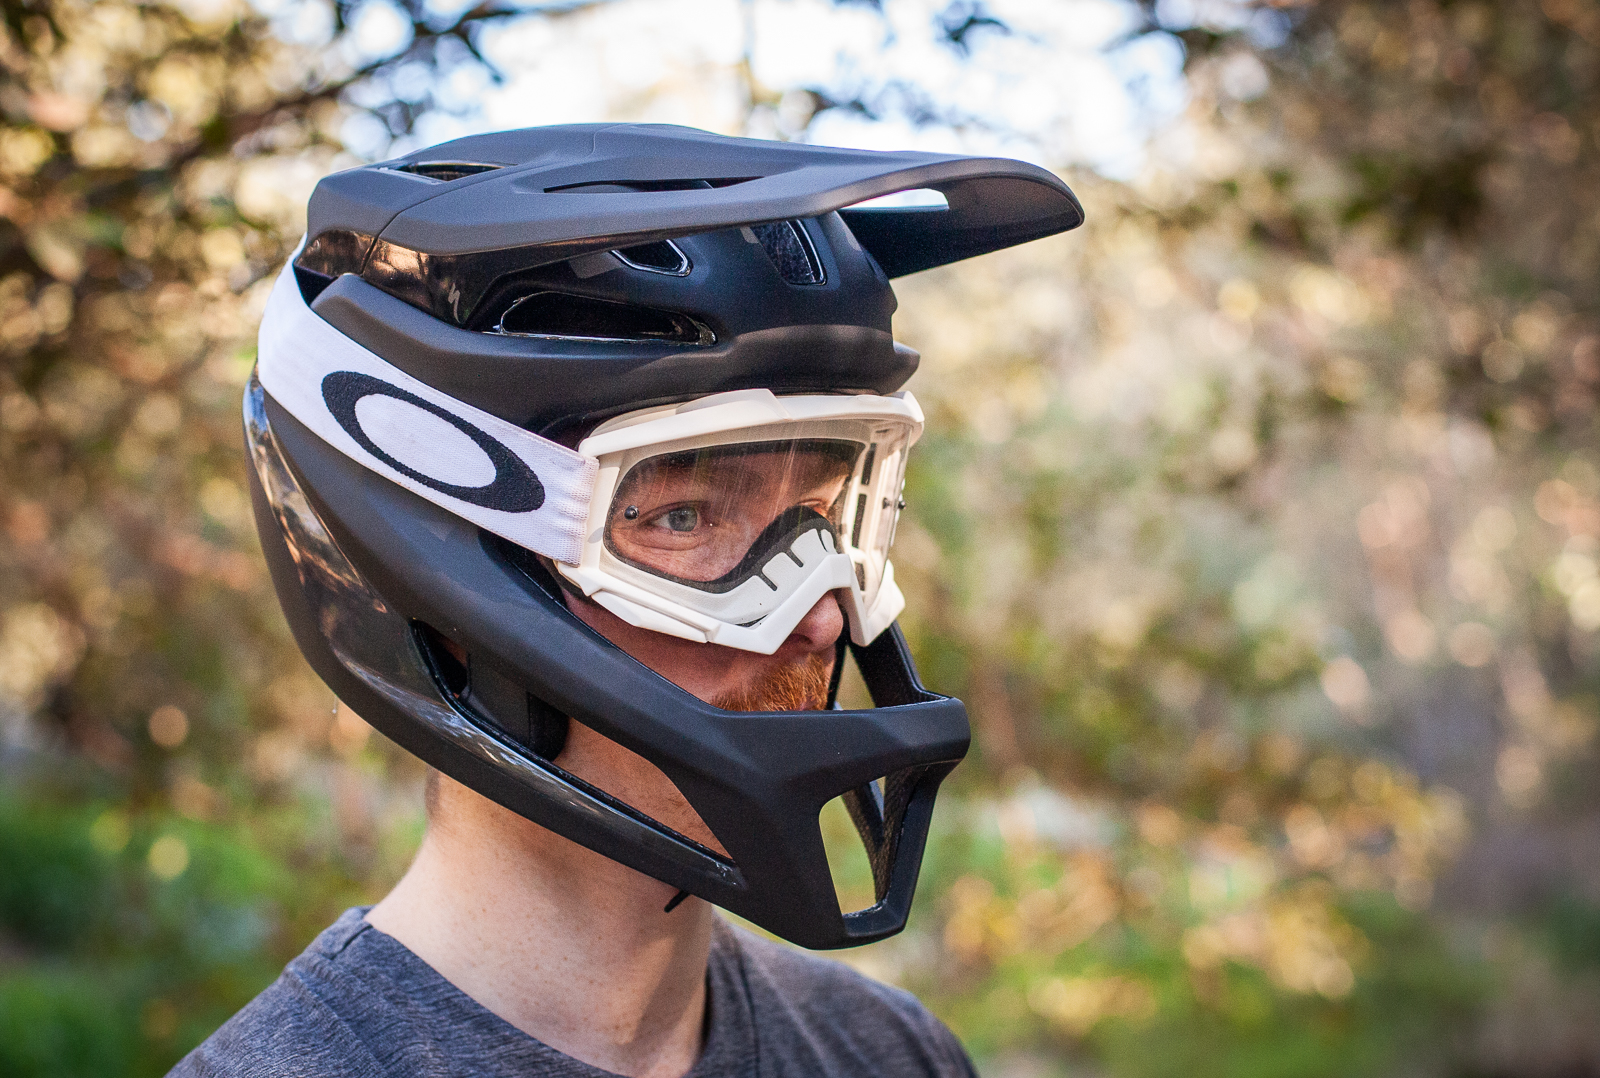 TESTED: Specialized Gambit 640g full-face helmet - Australian